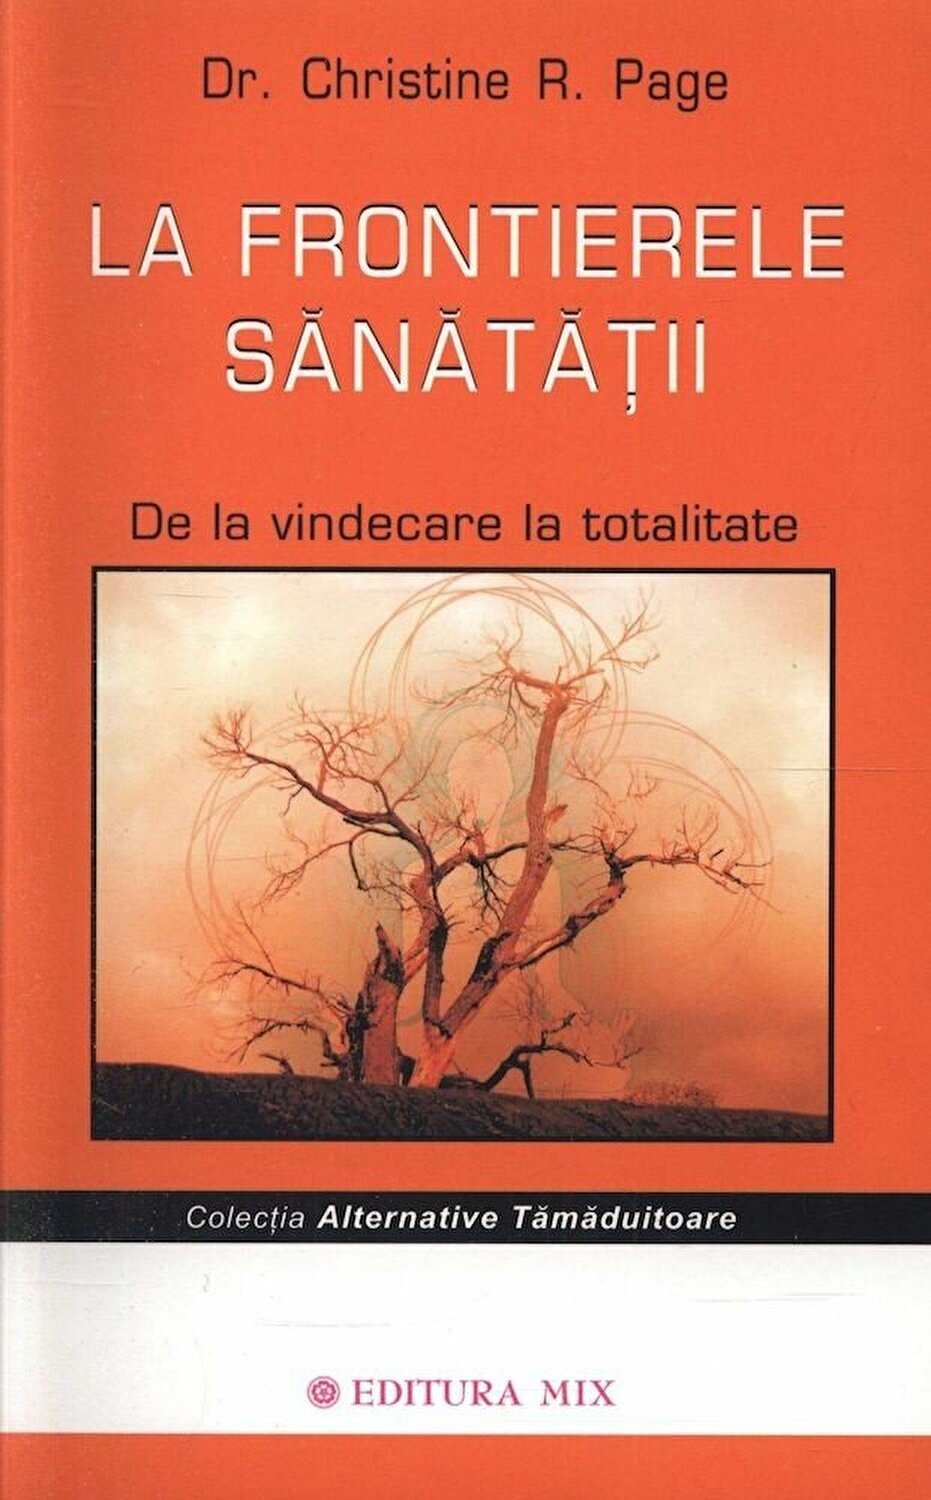 La frontierele sanatatii | Christine Page De La Carturesti Carti Dezvoltare Personala 2023-06-04 3